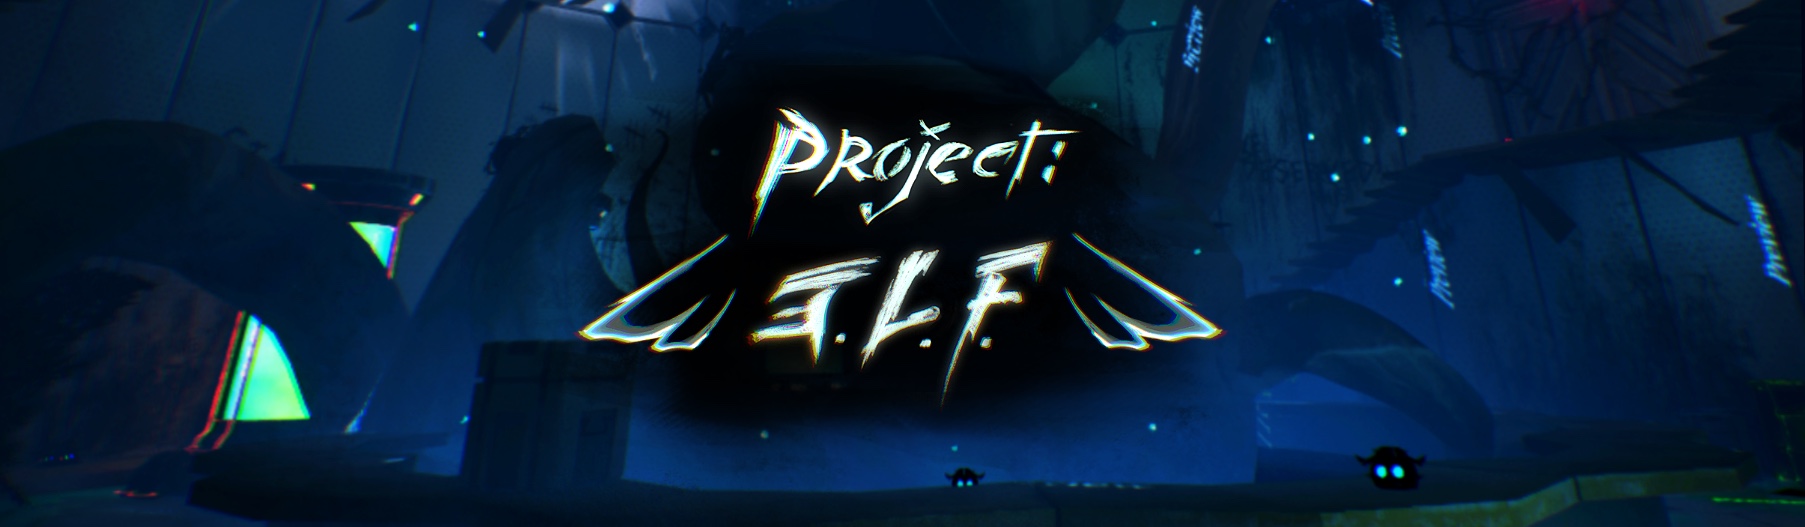 Project: E.L.F